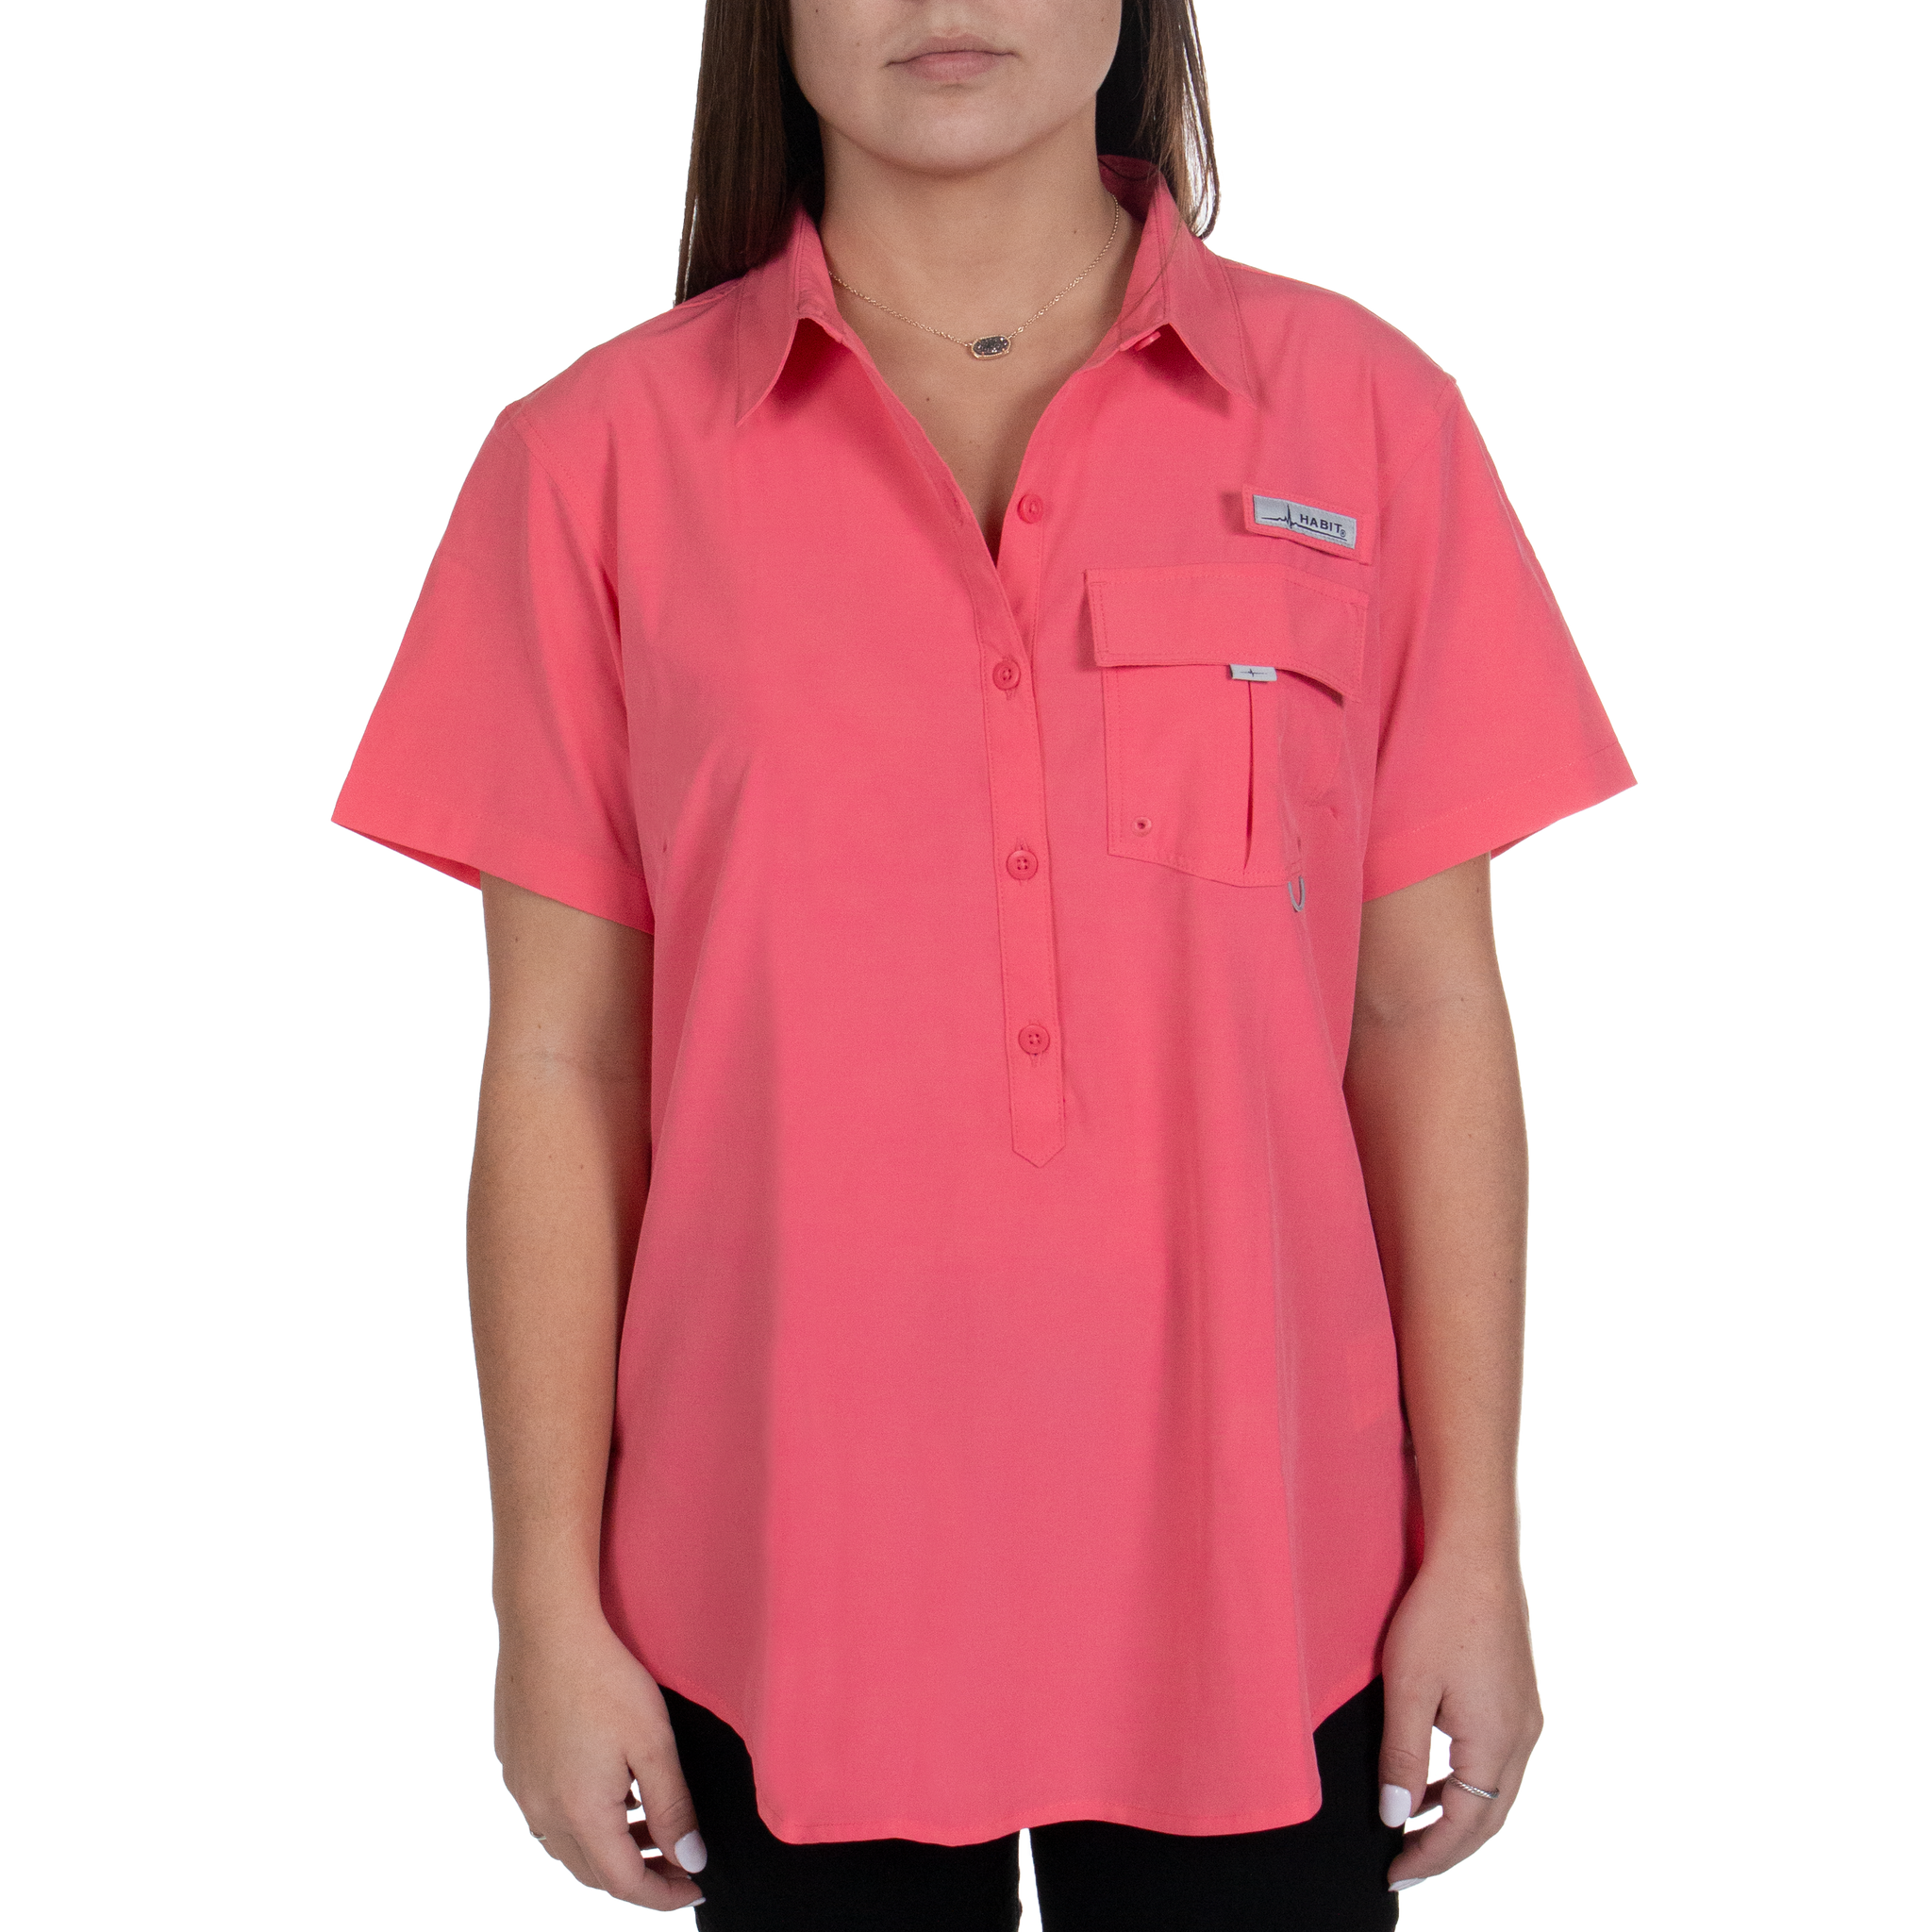 Habit Women's Light Purple Fishing & Outdoor Shirt Size M Lightweight  Button Up